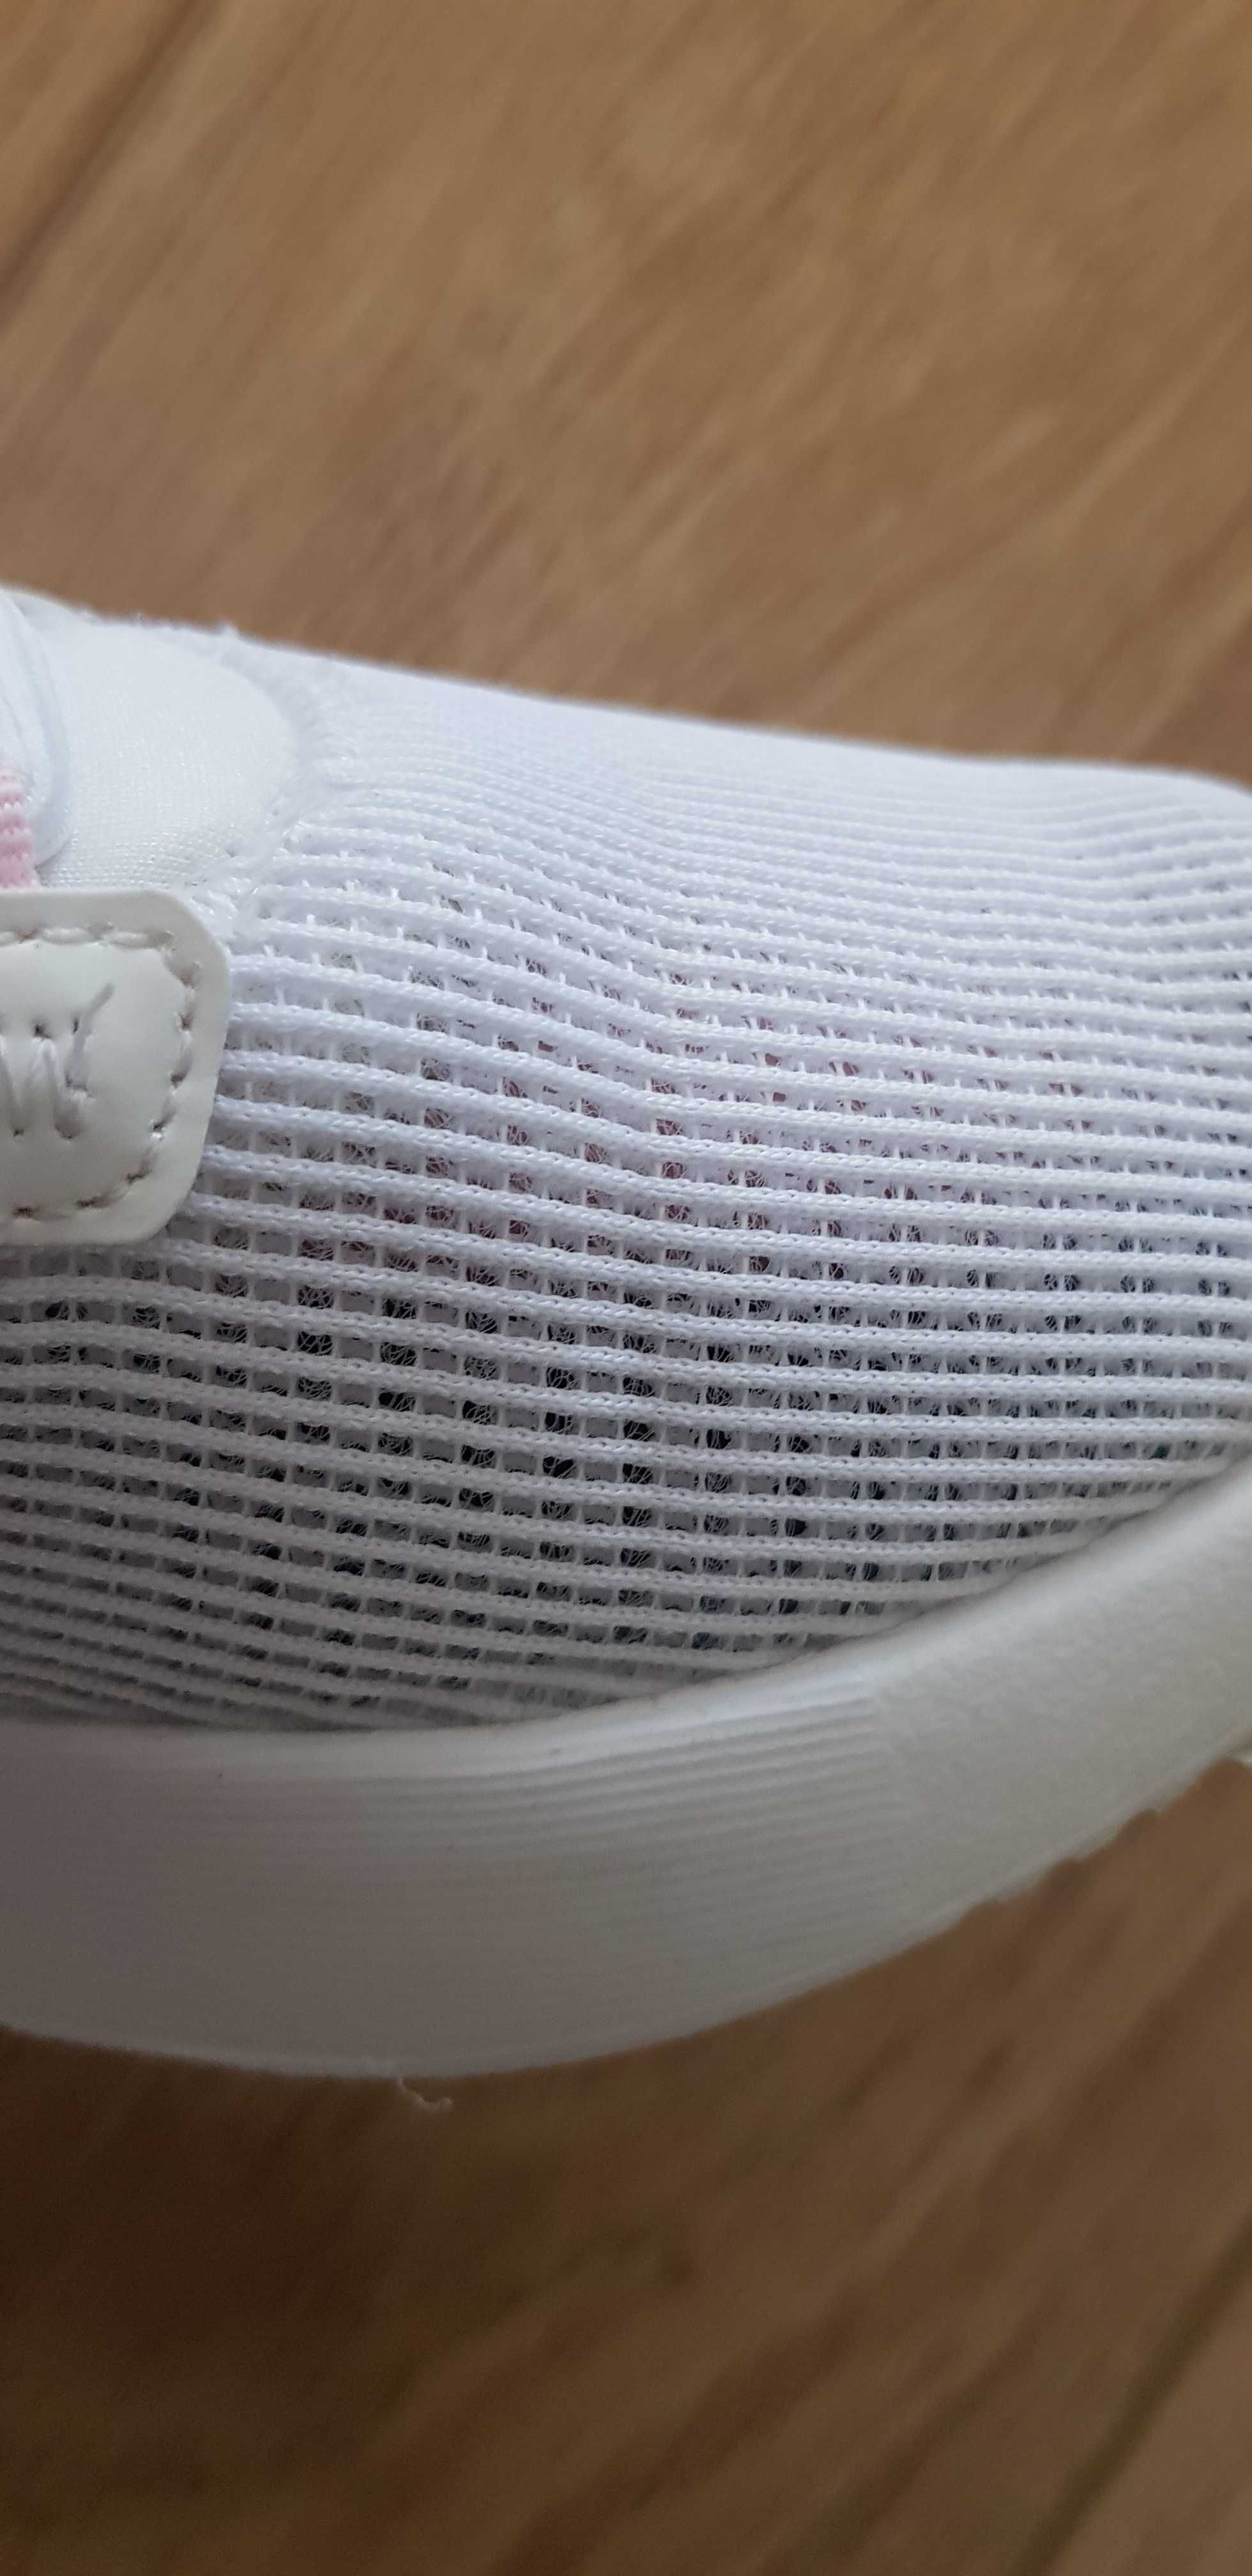 Sneakersy białe Adidas siateczka  lato rozm.30 1/2 mierzone wkł.19.4cm